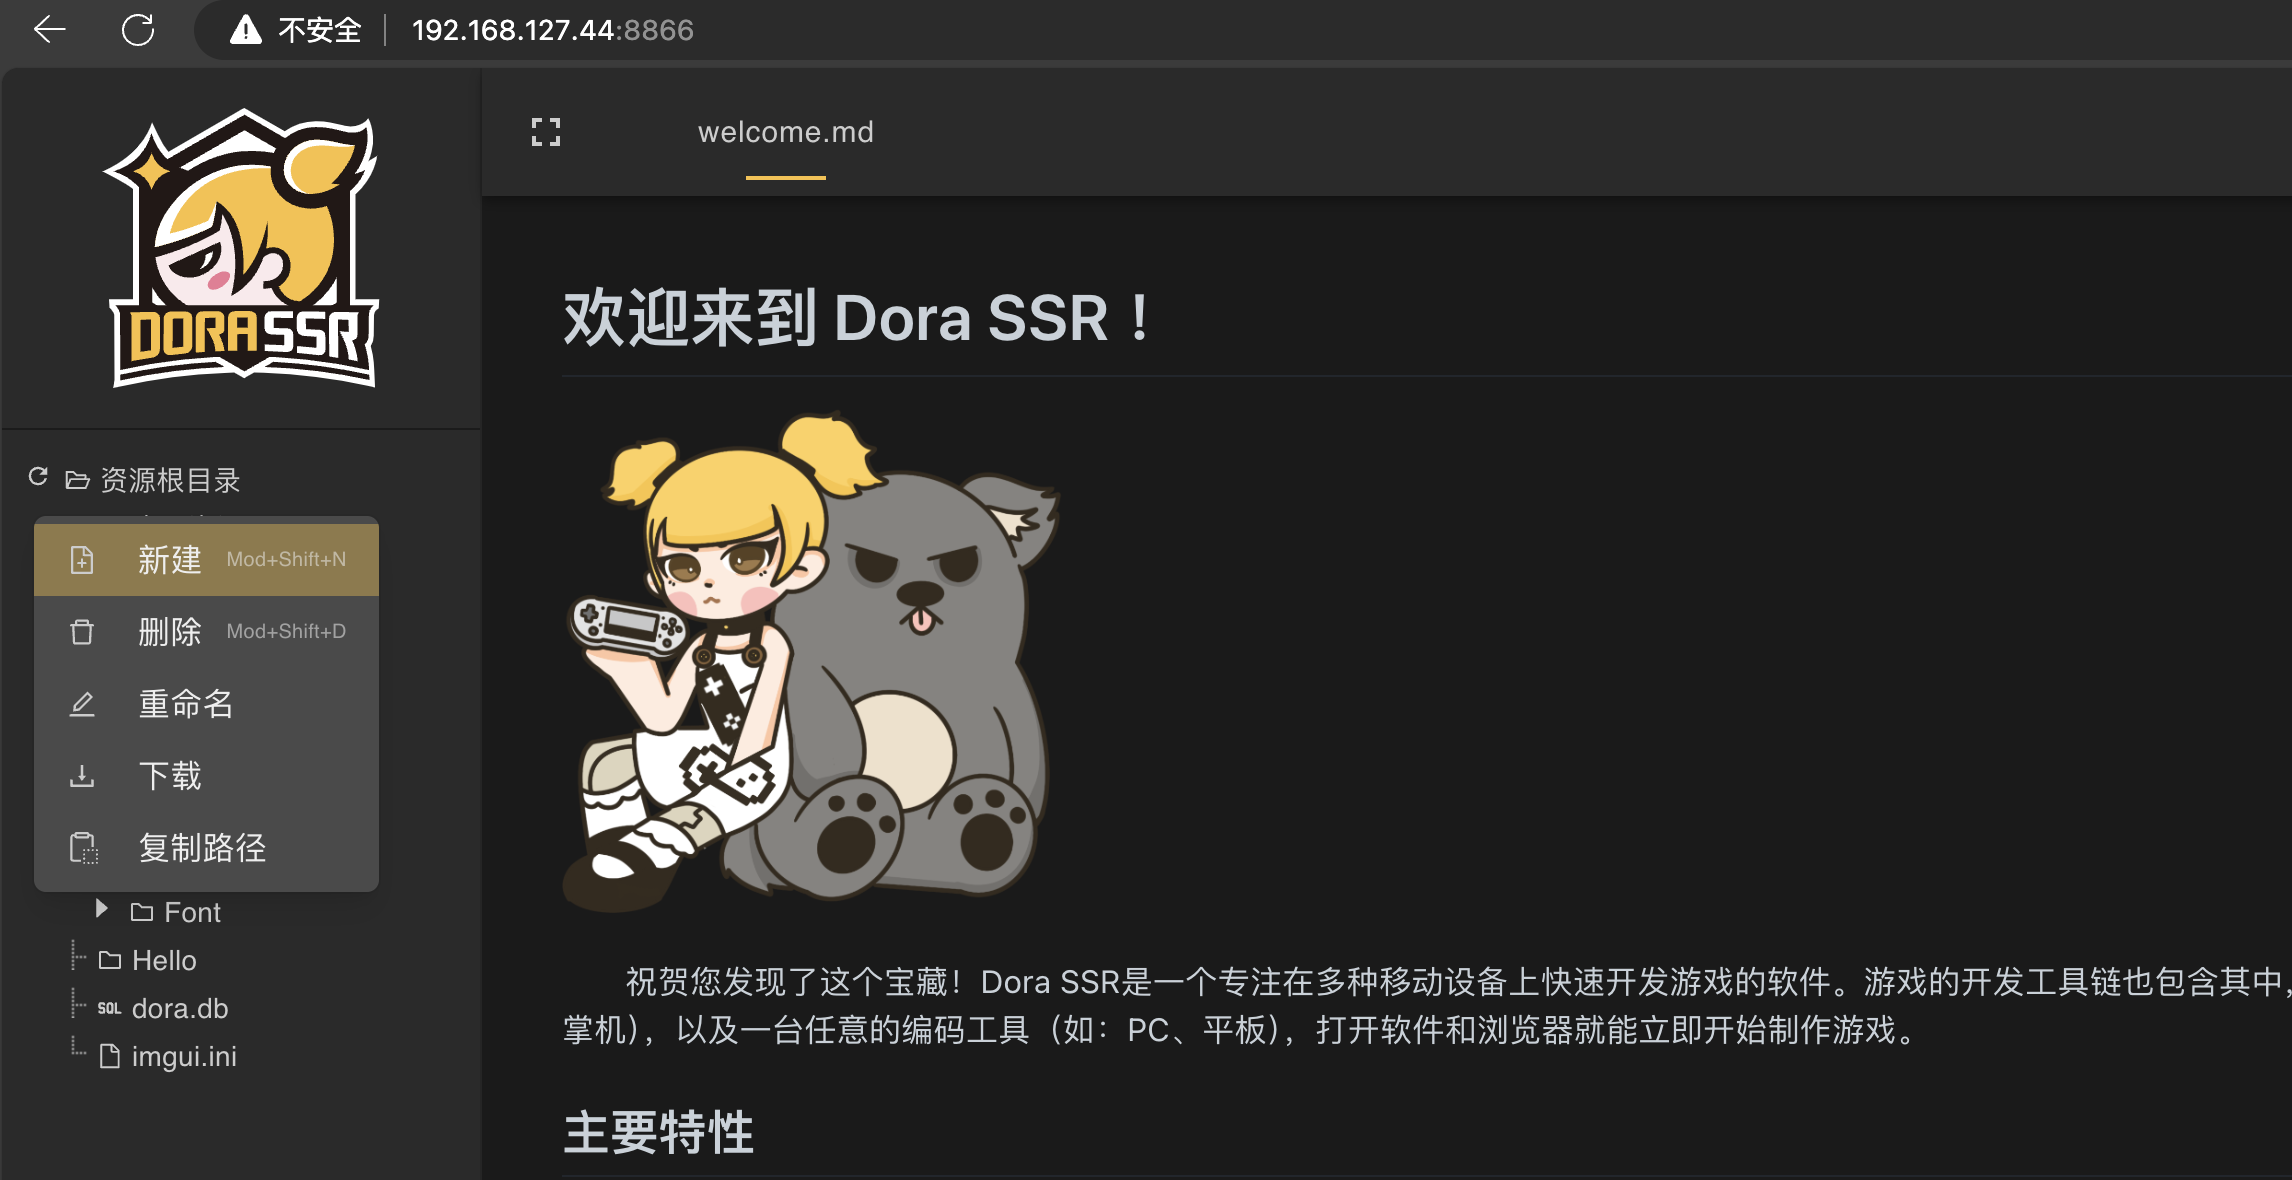 Acceda al IDE web de Dora SSR en el navegador y cree una nueva carpeta